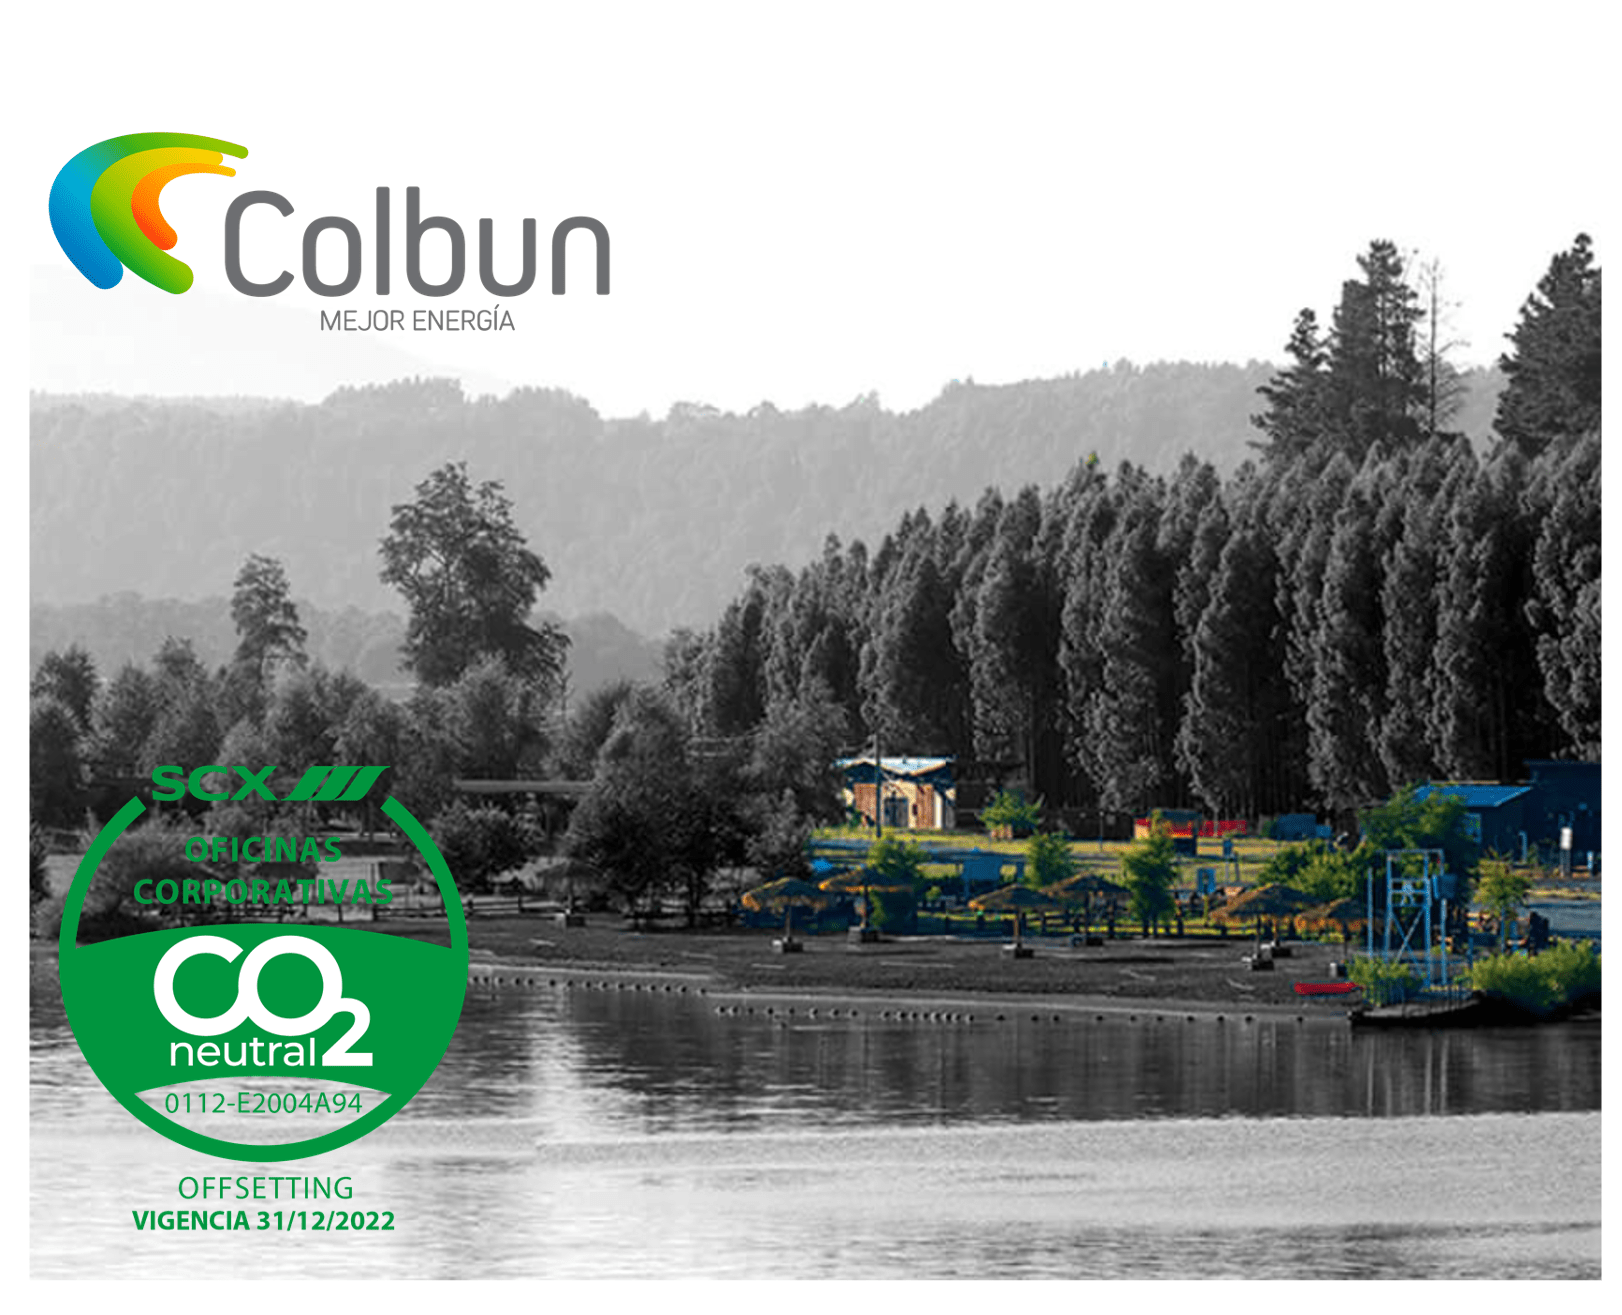 COLBUN neutralizes its OO.CC. emissions.